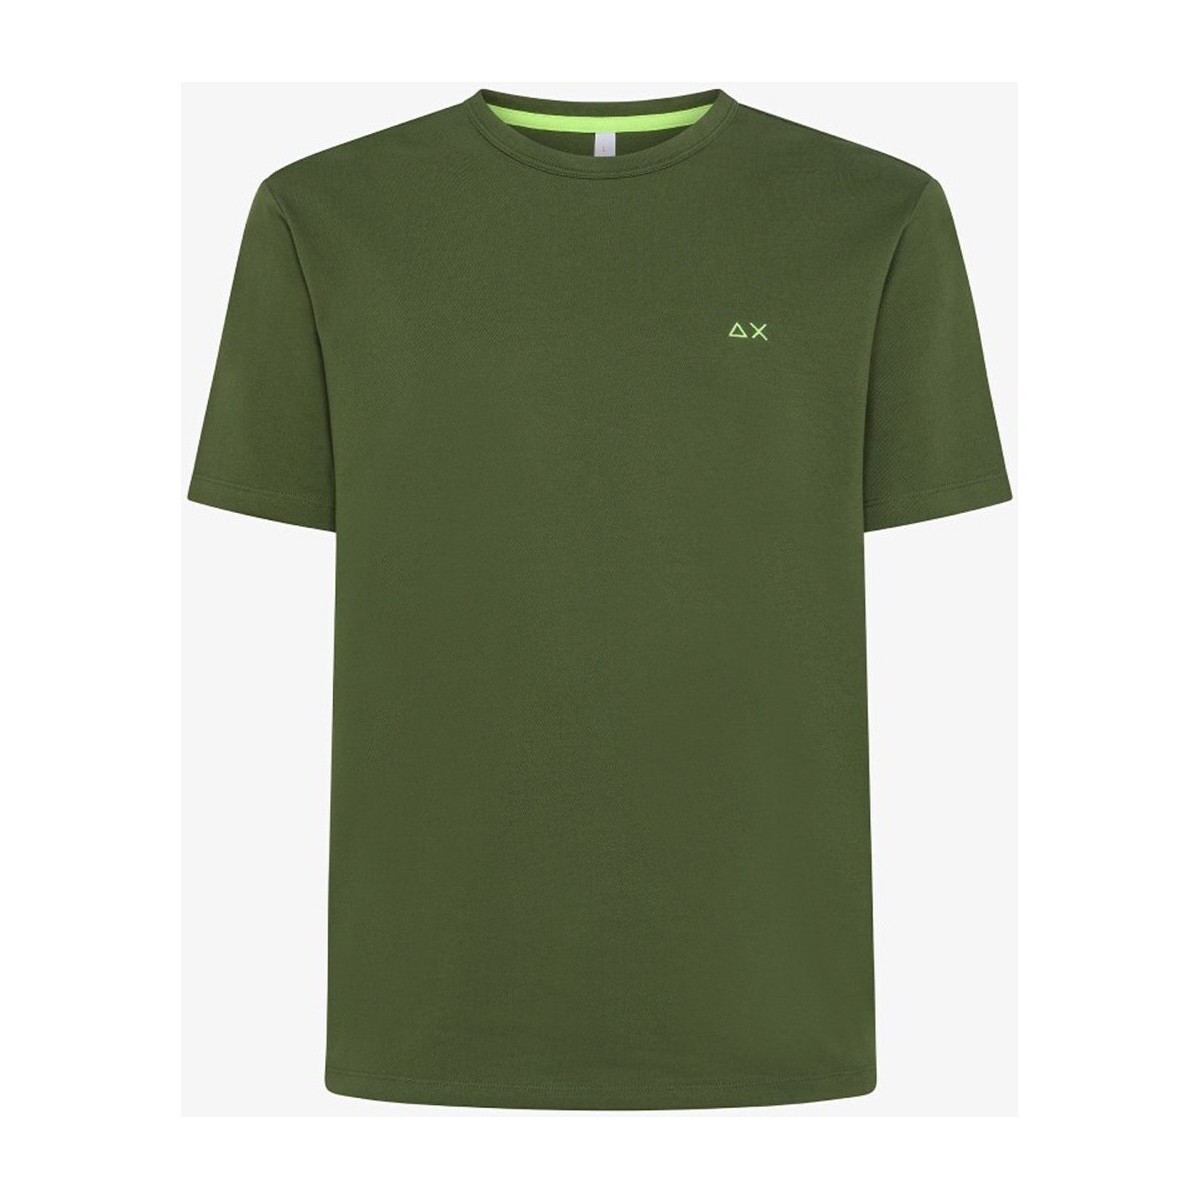 Vêtements Homme T-shirts manches courtes Sun68 T34123 T-Shirt/Polo homme Vert